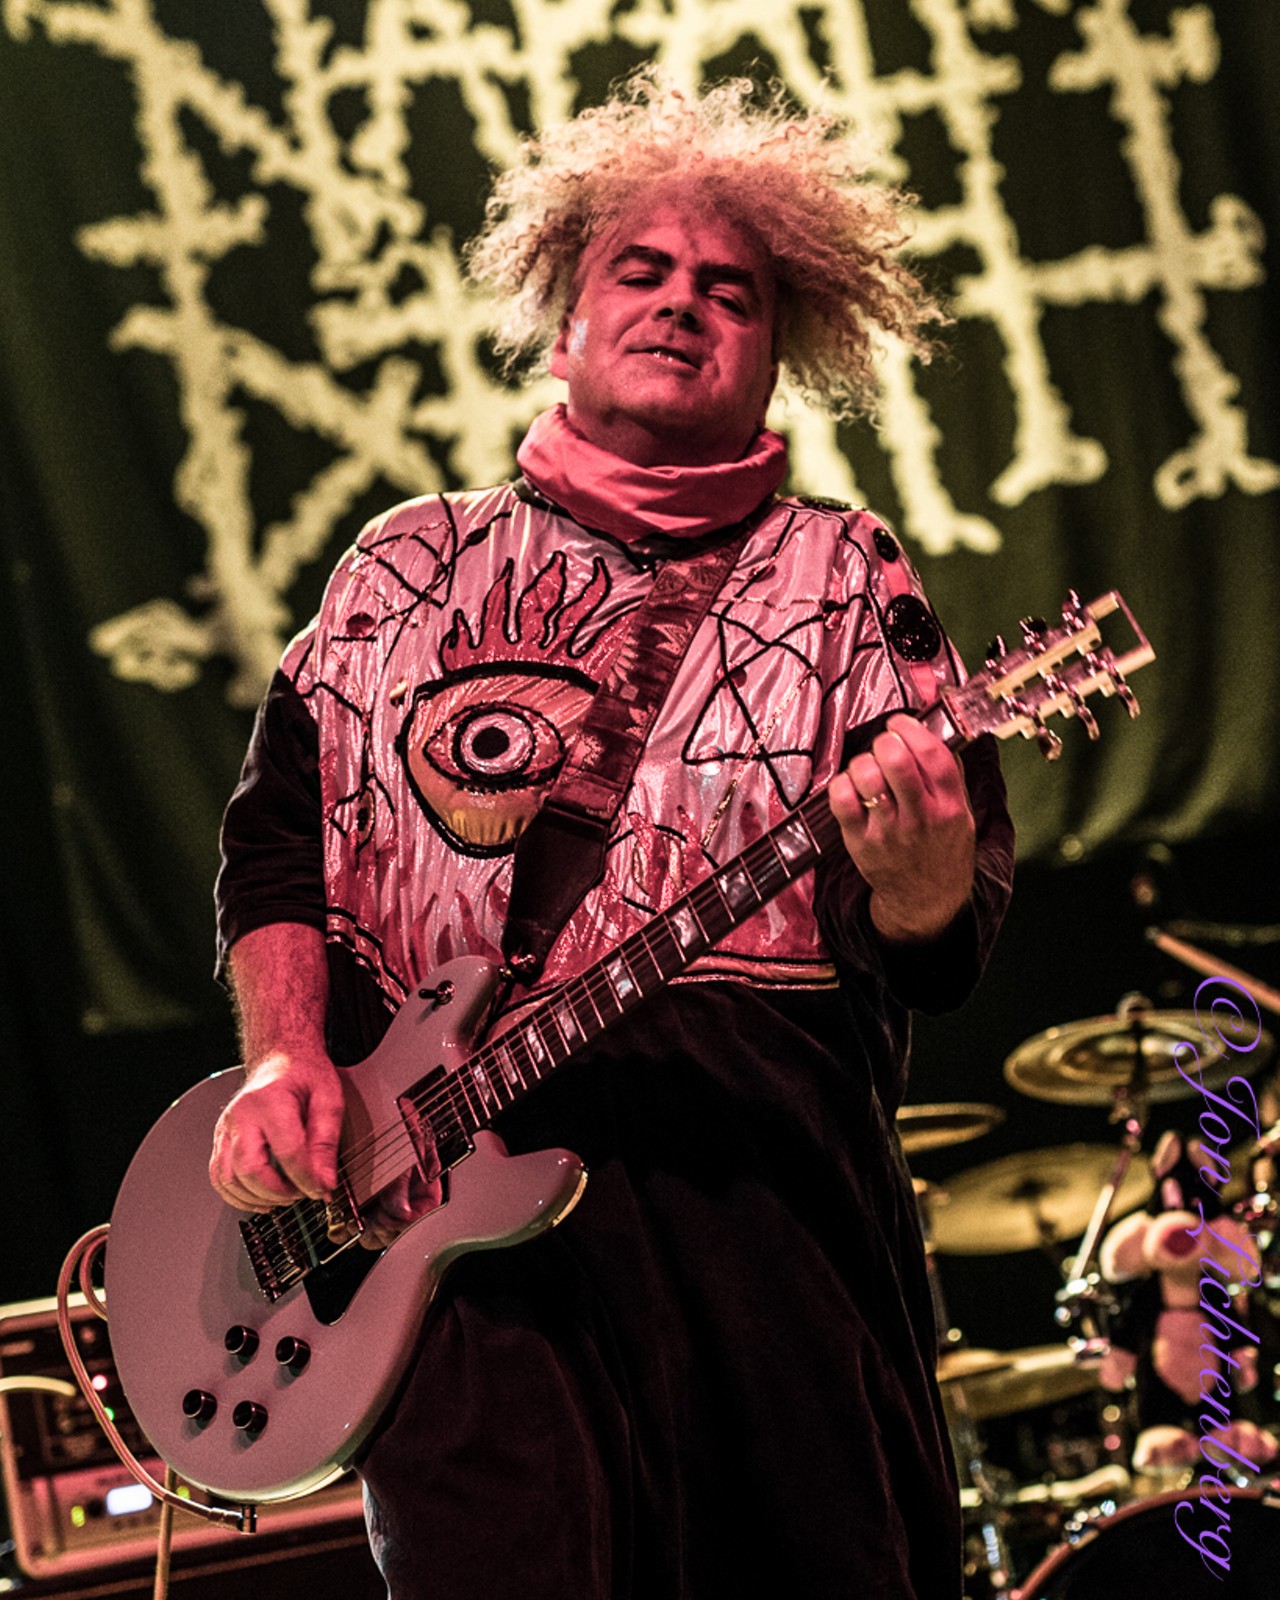 Napalm Death, The Melvins and Melt Banana Performing at the Agora